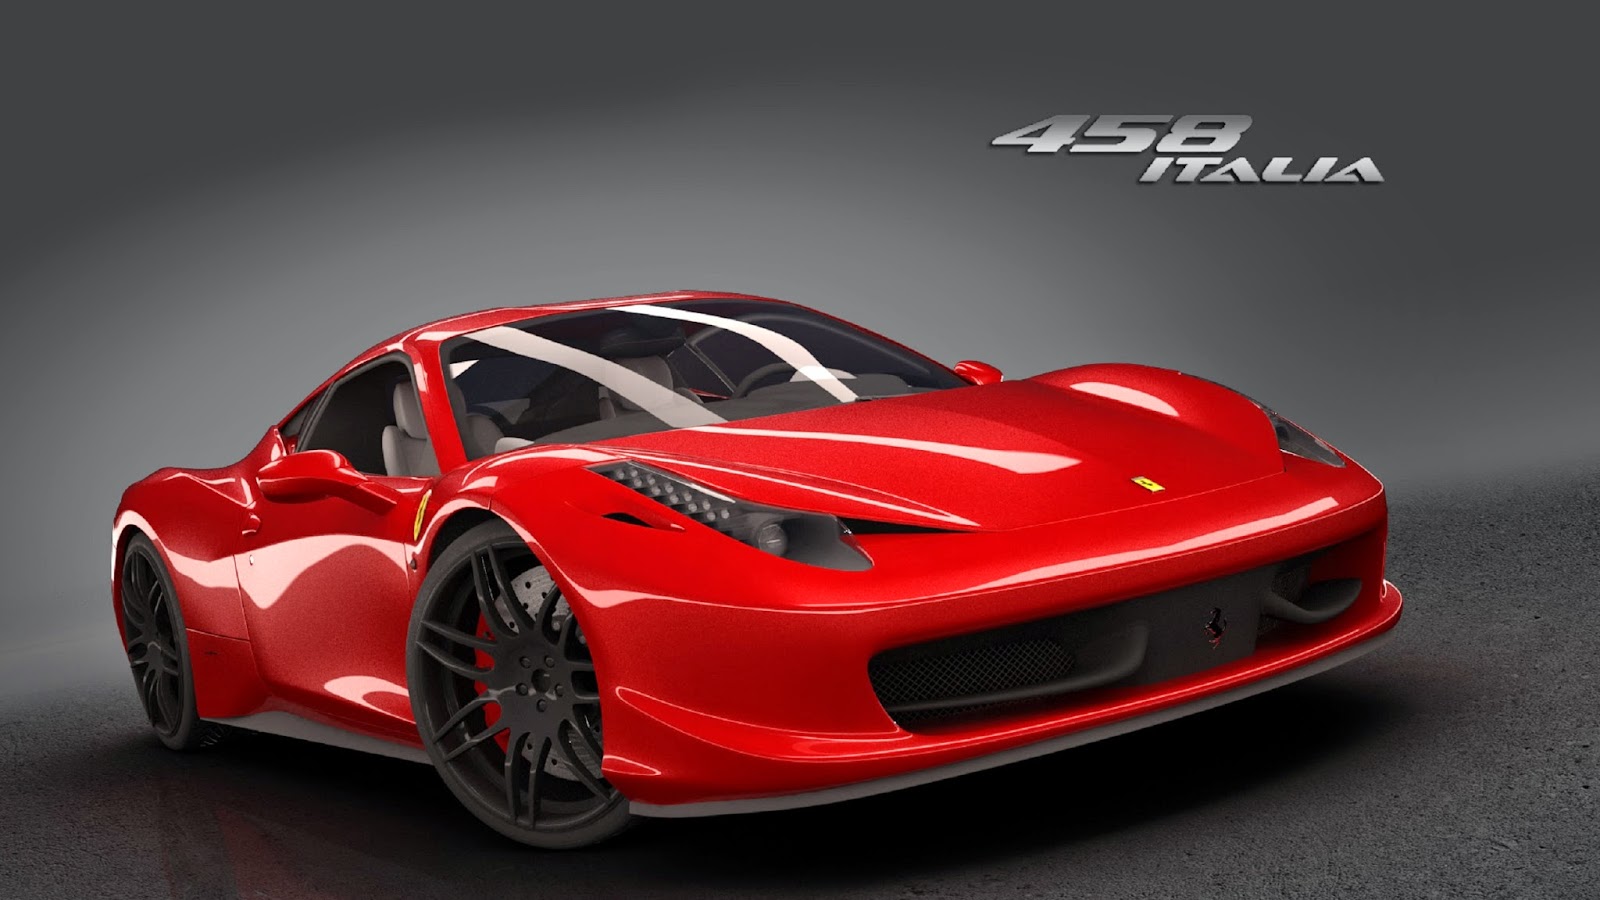 Daftar Harga Mobil Ferrari Terbaru